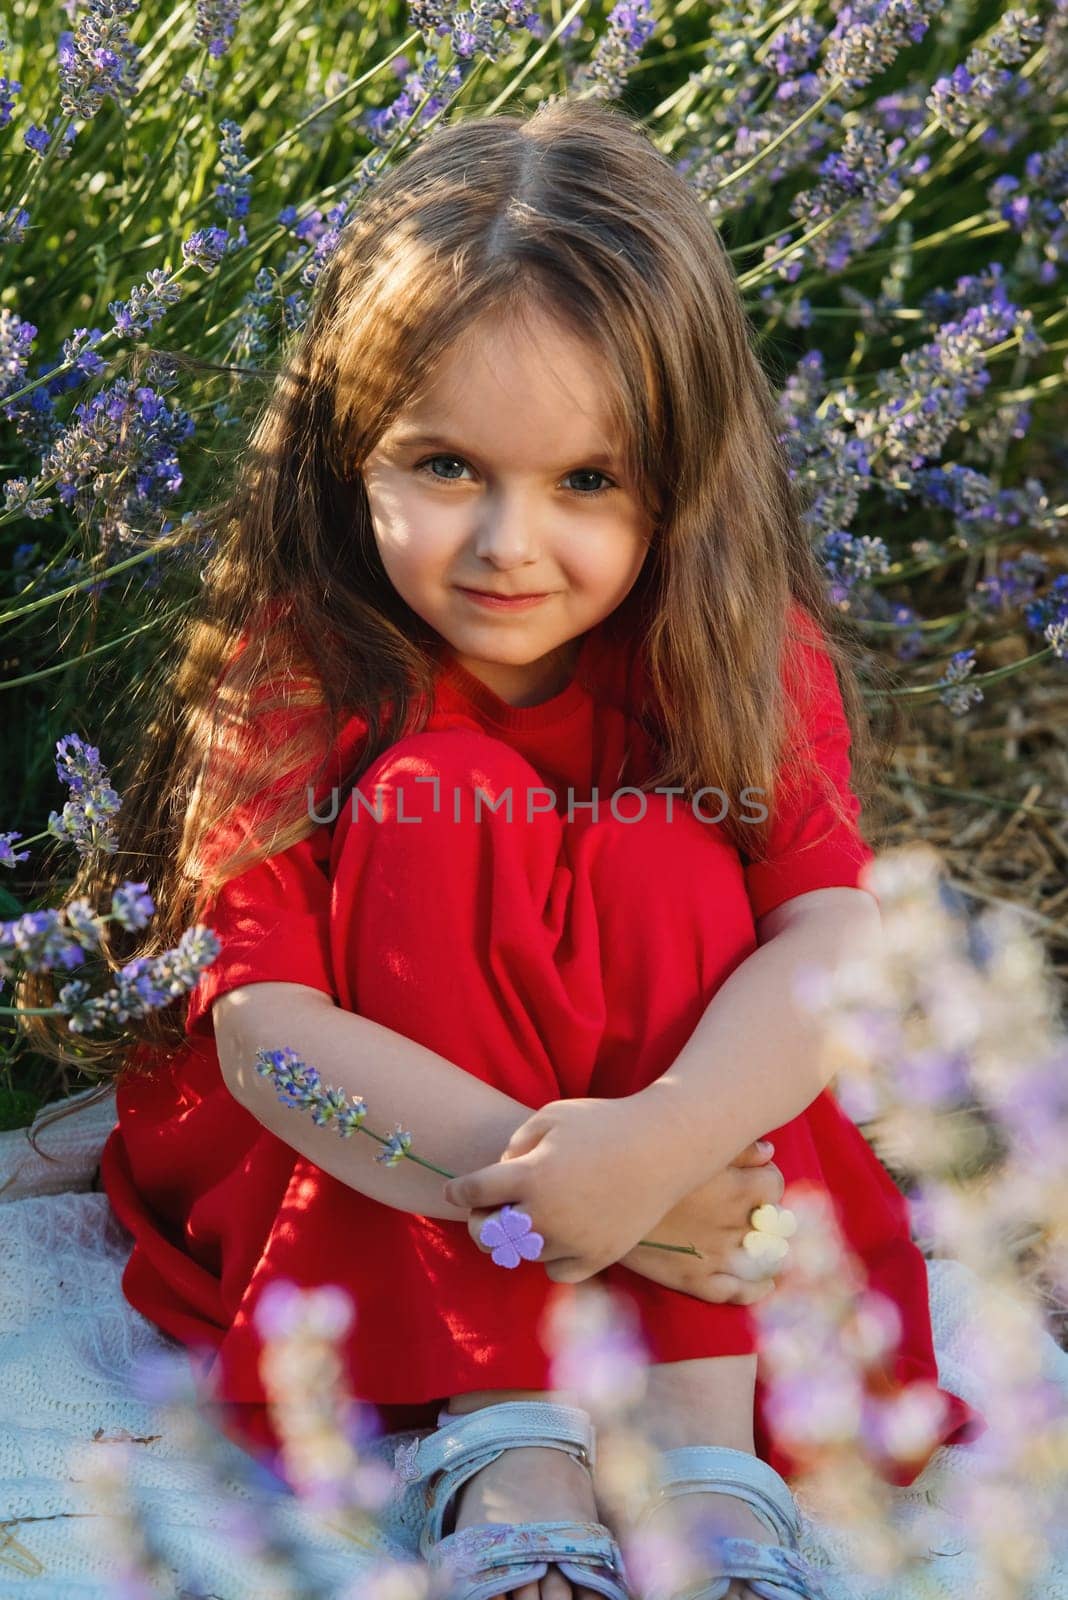 Portrait of cute little girl in the lavender flowers in meadow. by leonik